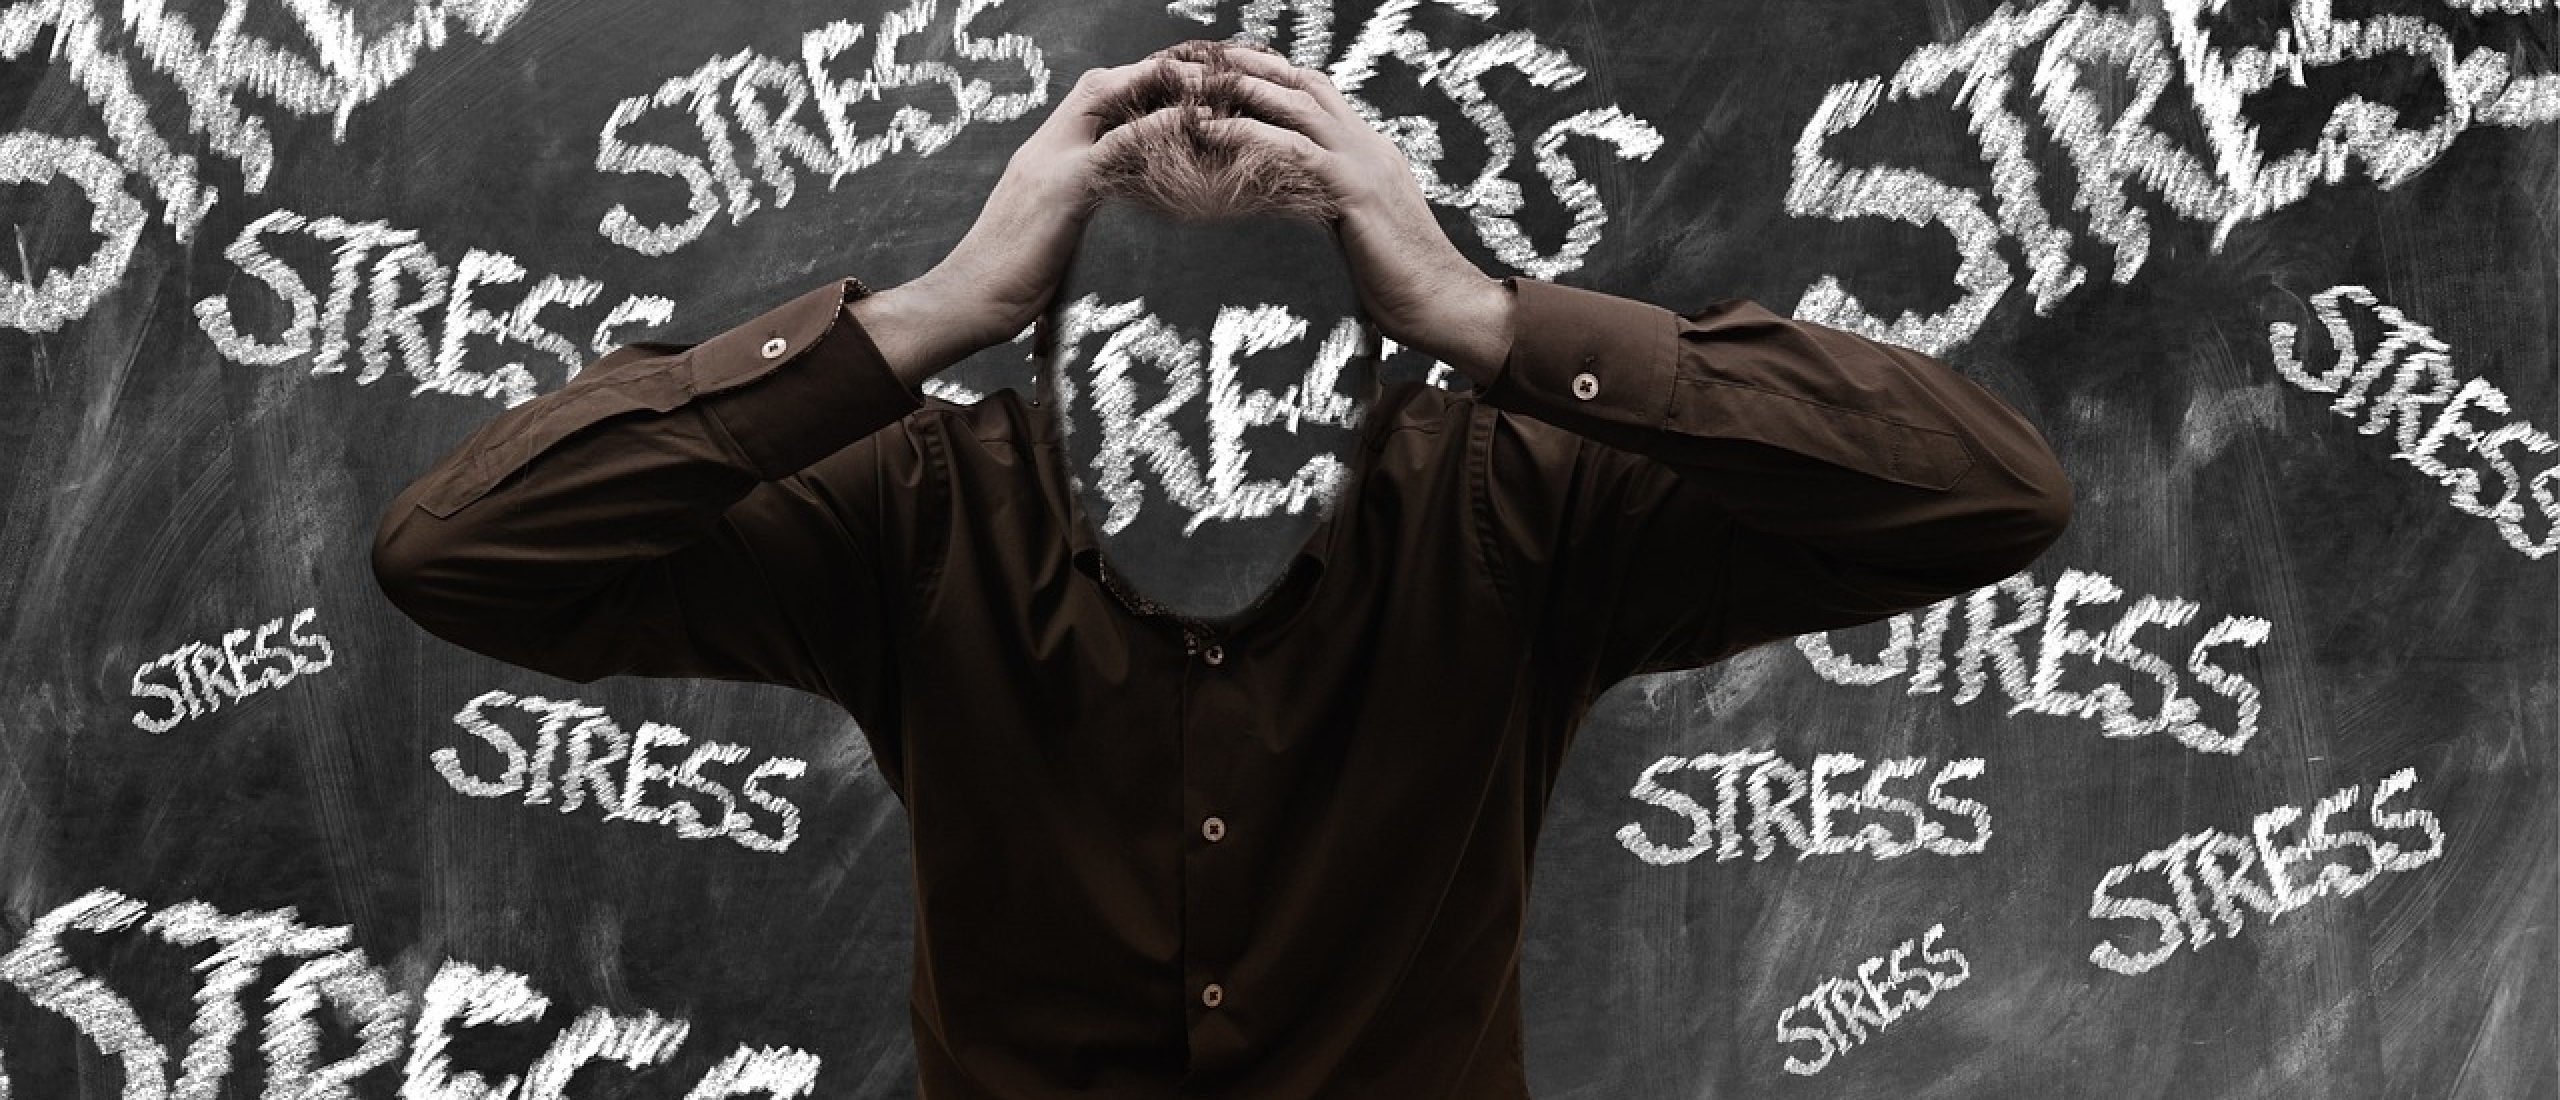 Stressverminderderen? 5 tips die werken!